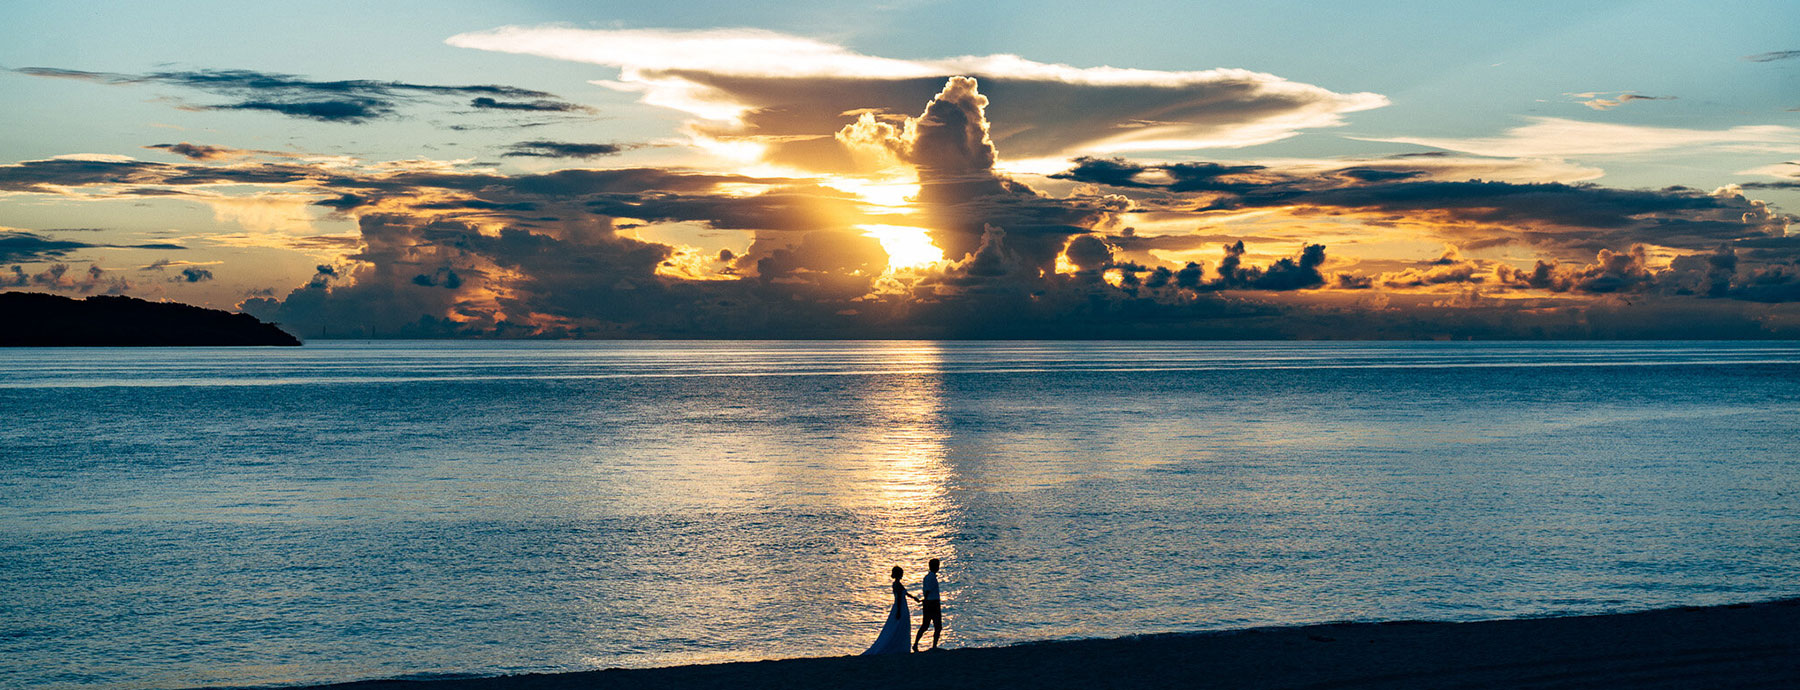 おしゃれなフォトウエディングの沖縄プラン夕日が美しい海辺の新郎新婦